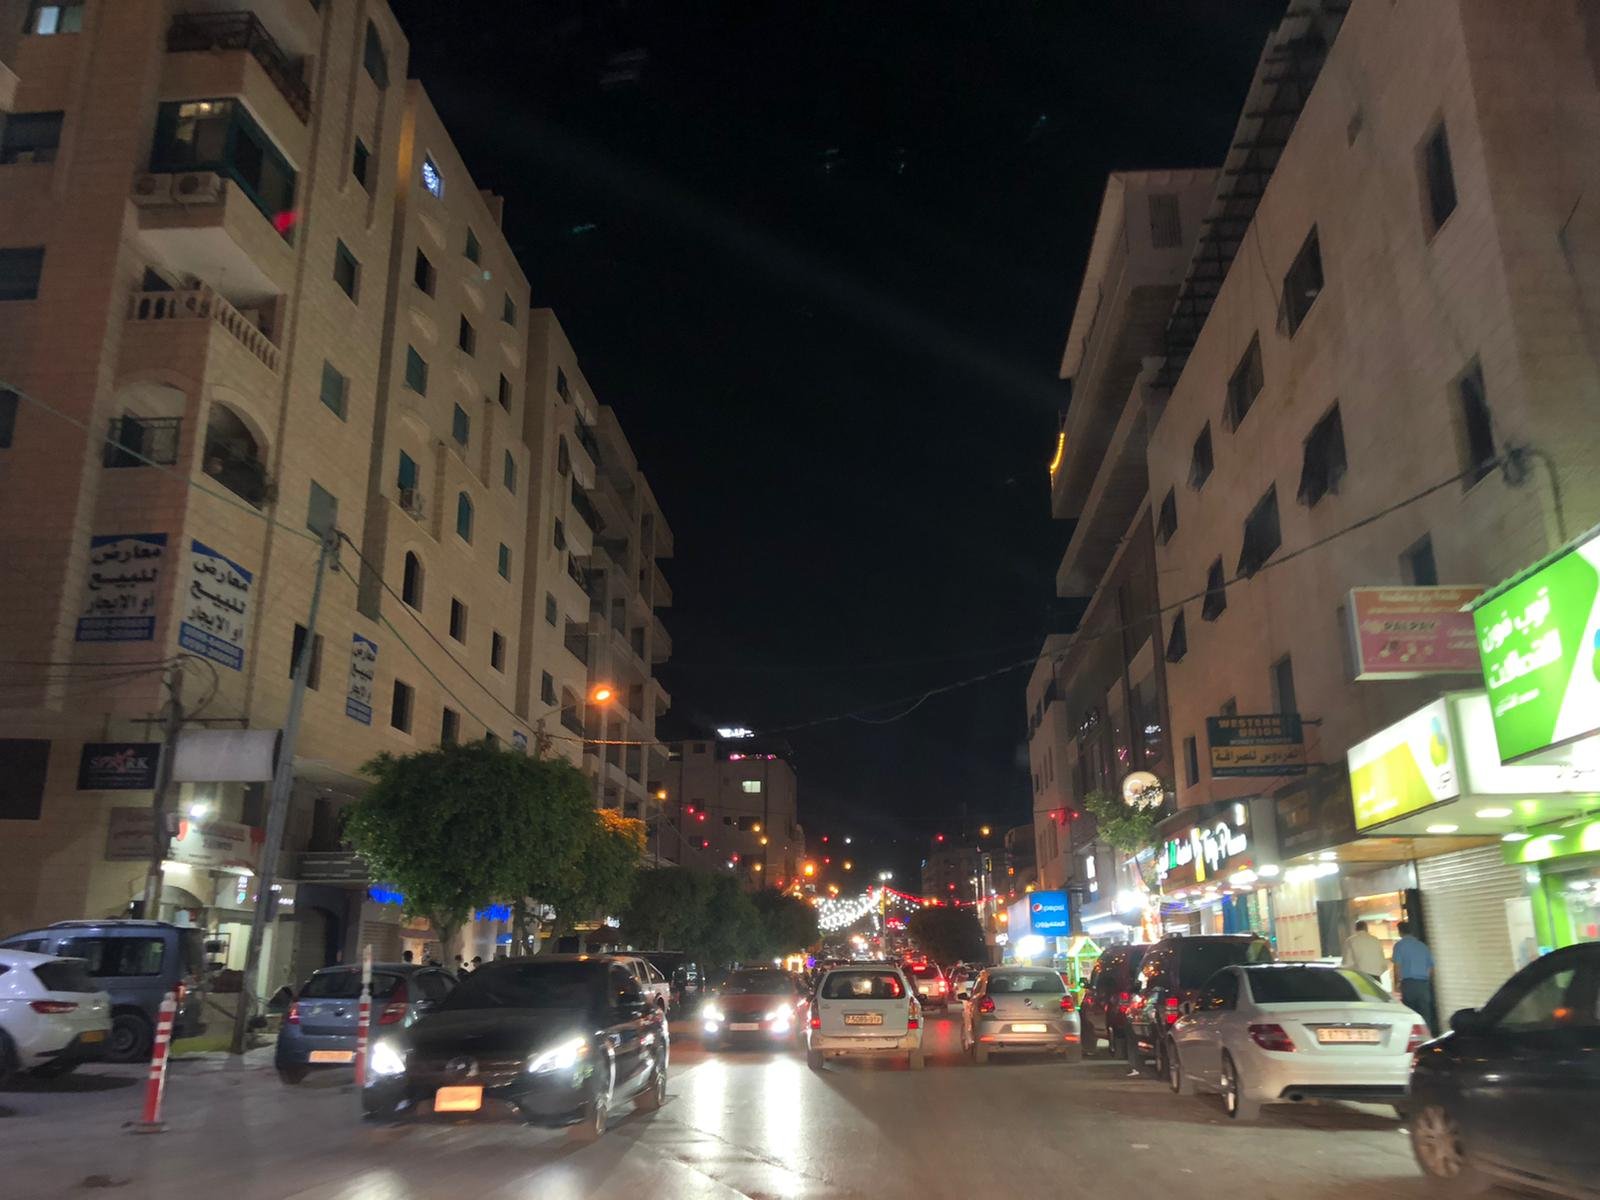 "باب الساحة" وخان التجار شاهدان على حكايات رمضان في نابلس-0